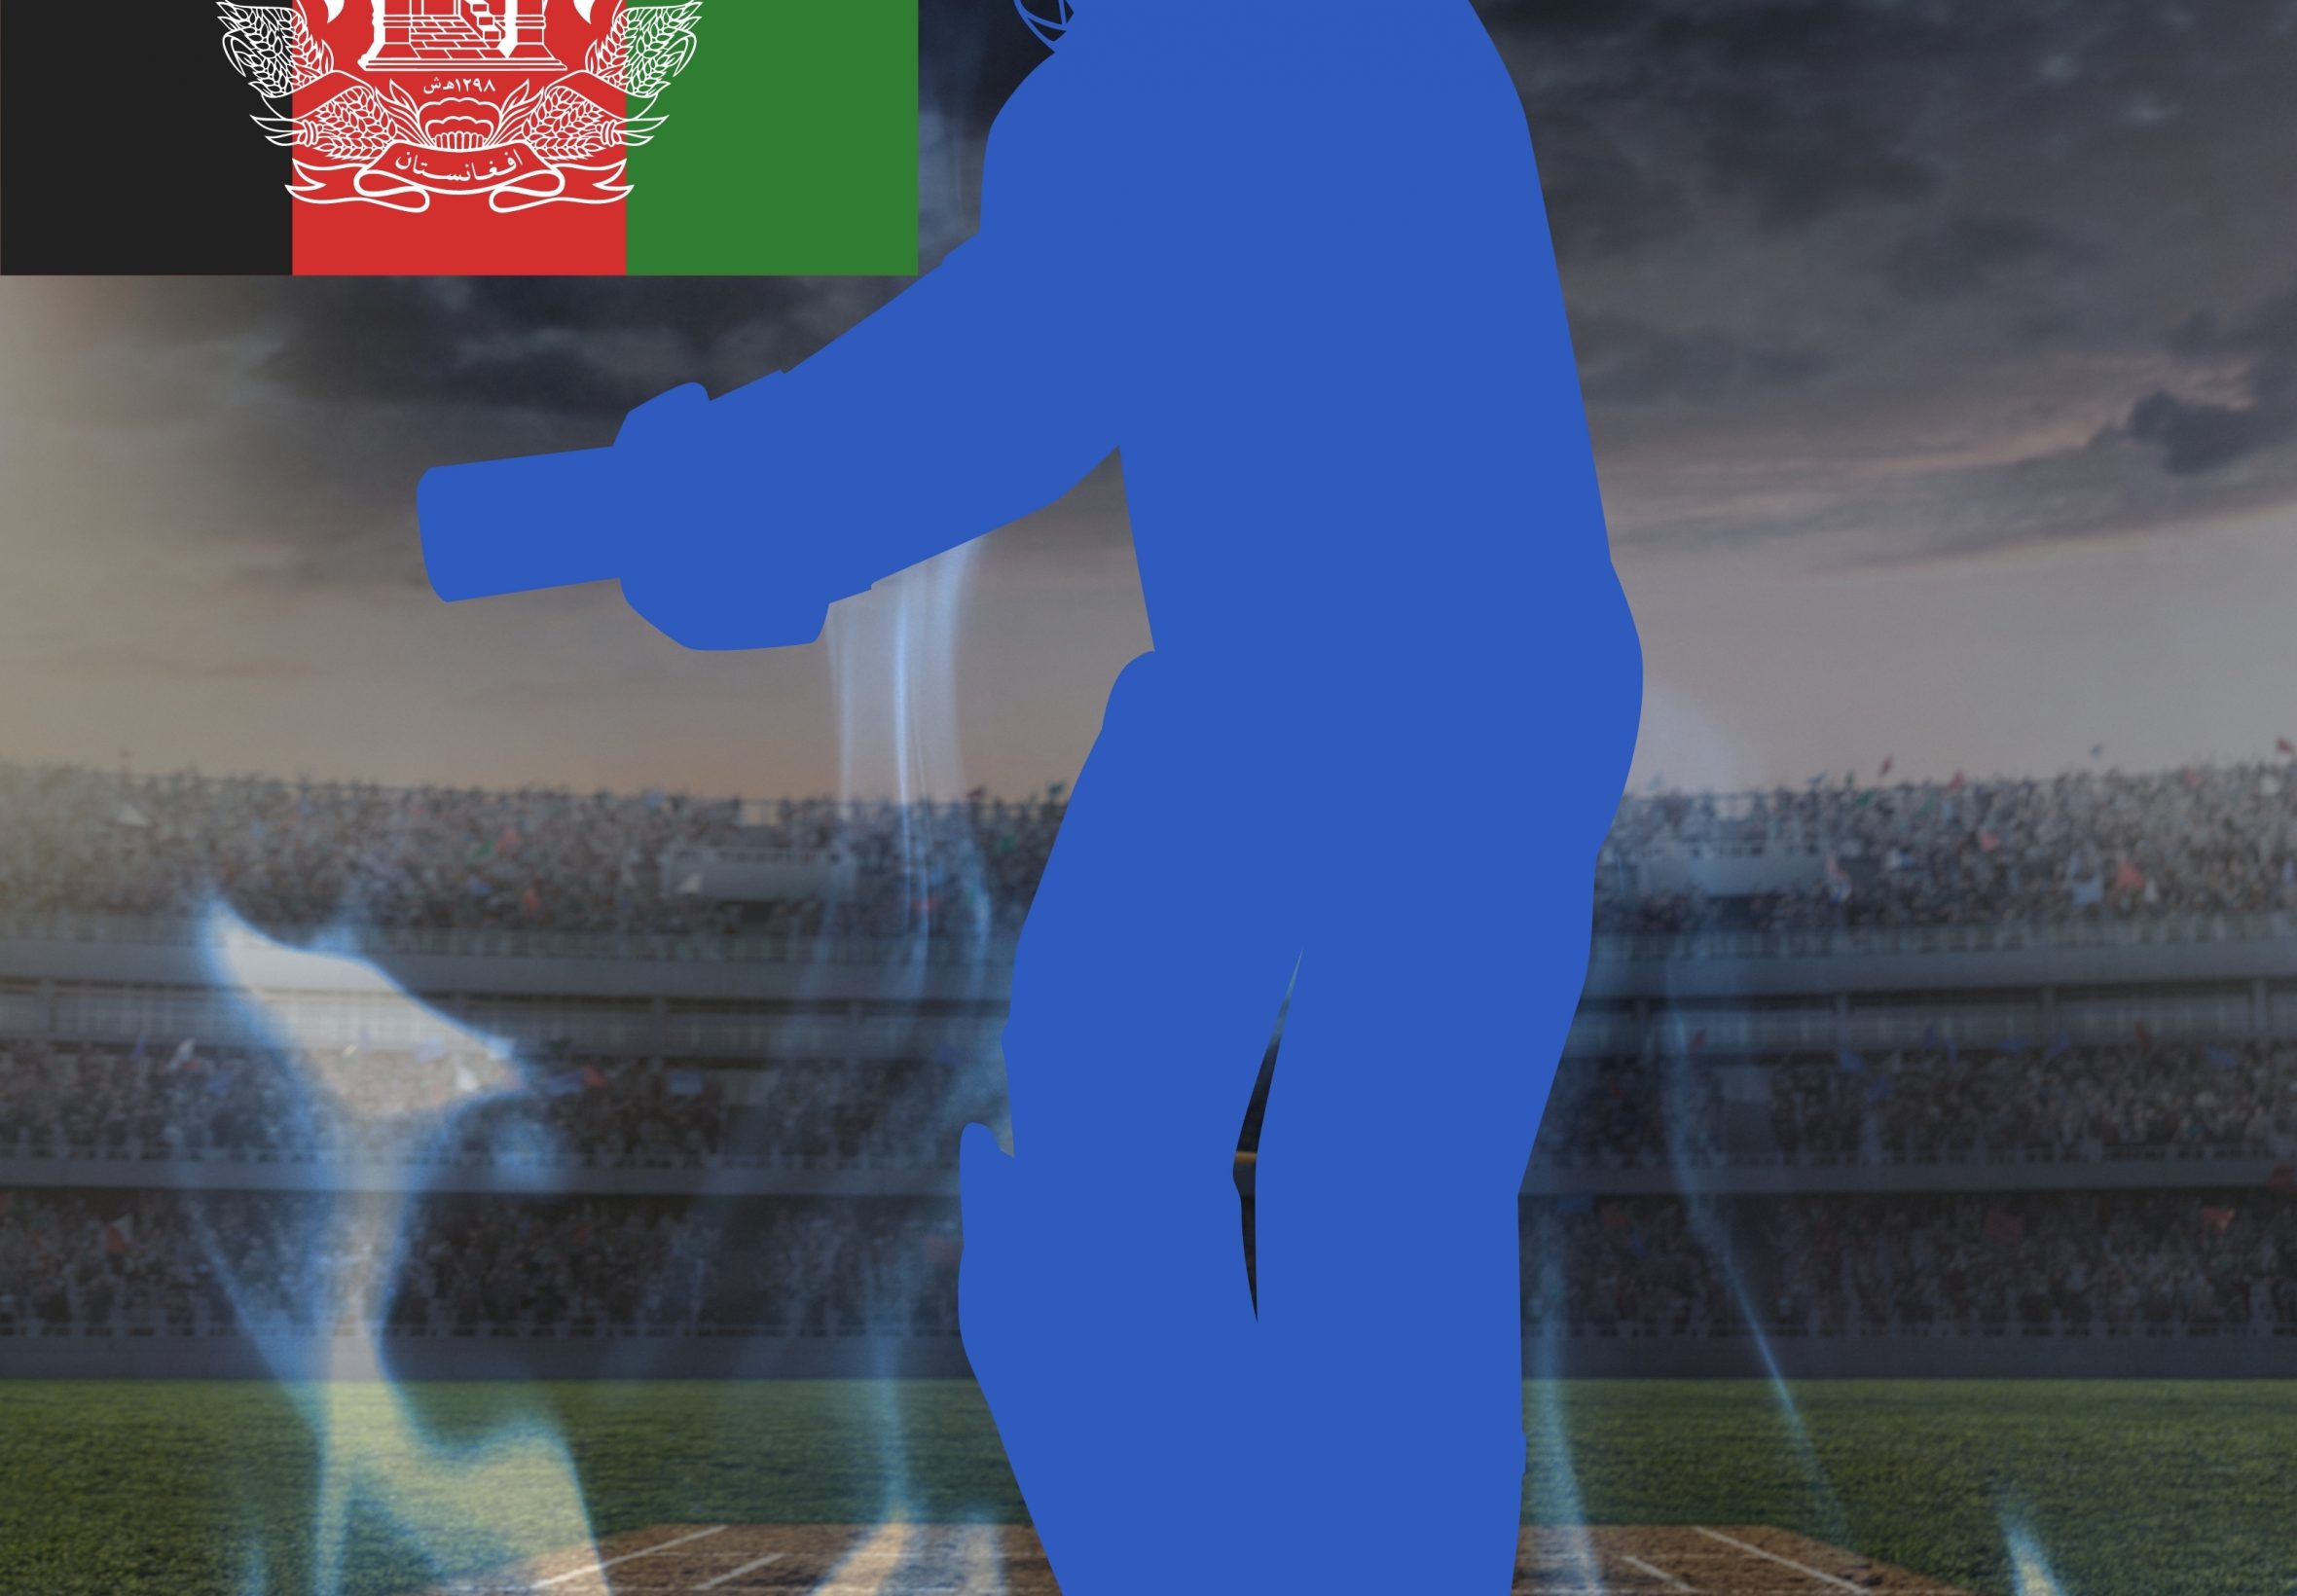 2360x1640 iPad Air wallpaper 4k Afhganistan Cricket Stadium iPad Wallpaper 2360x1640 pixels resolution